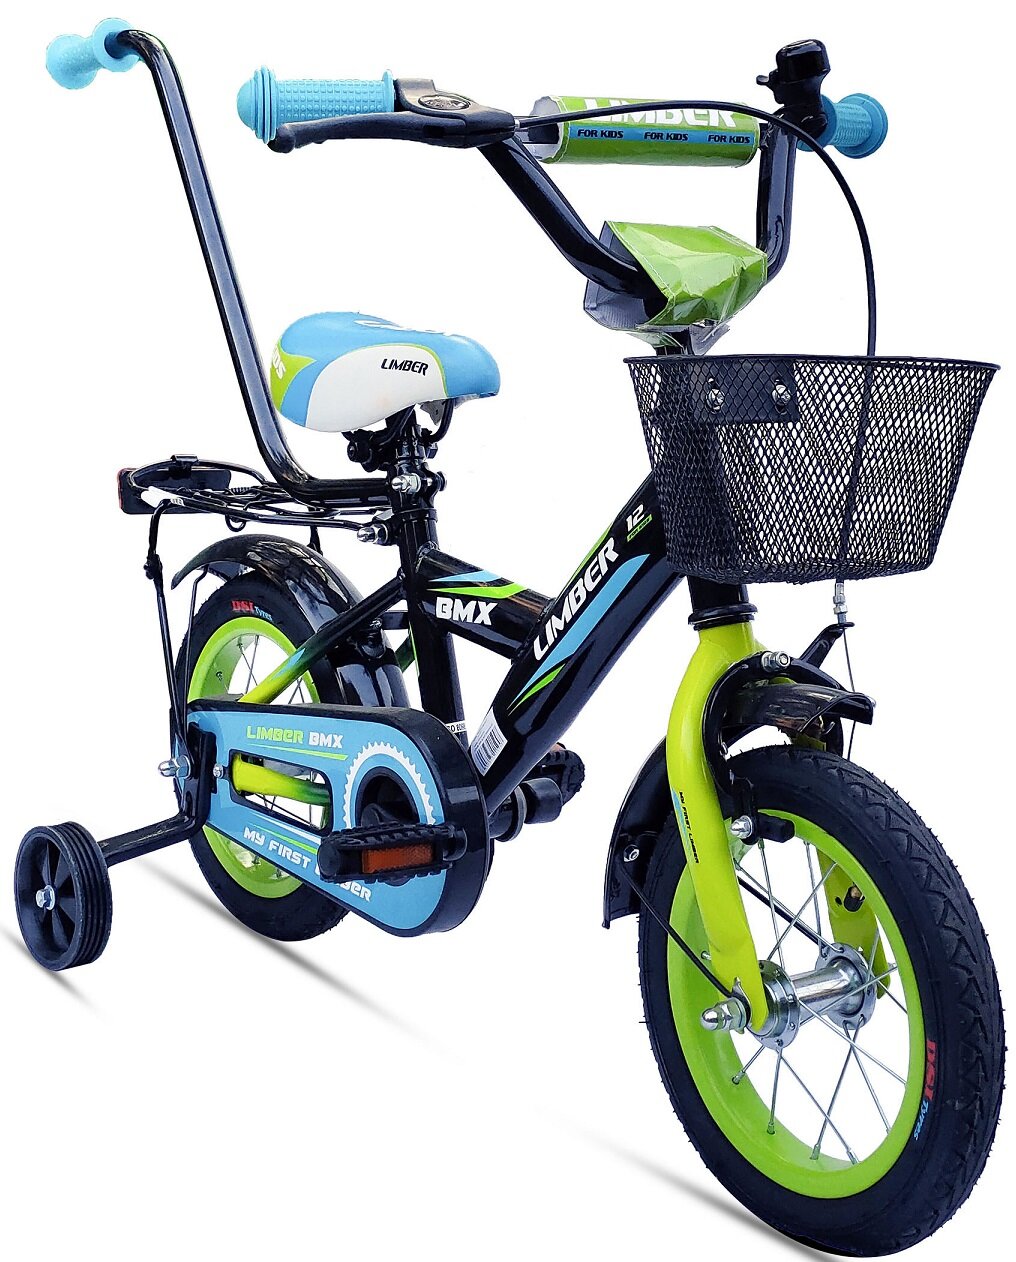 LIMBER Boy 12 cali dla chłopca Zielono-niebieski Rower dziecięcy - niskie  ceny i opinie w Media Expert